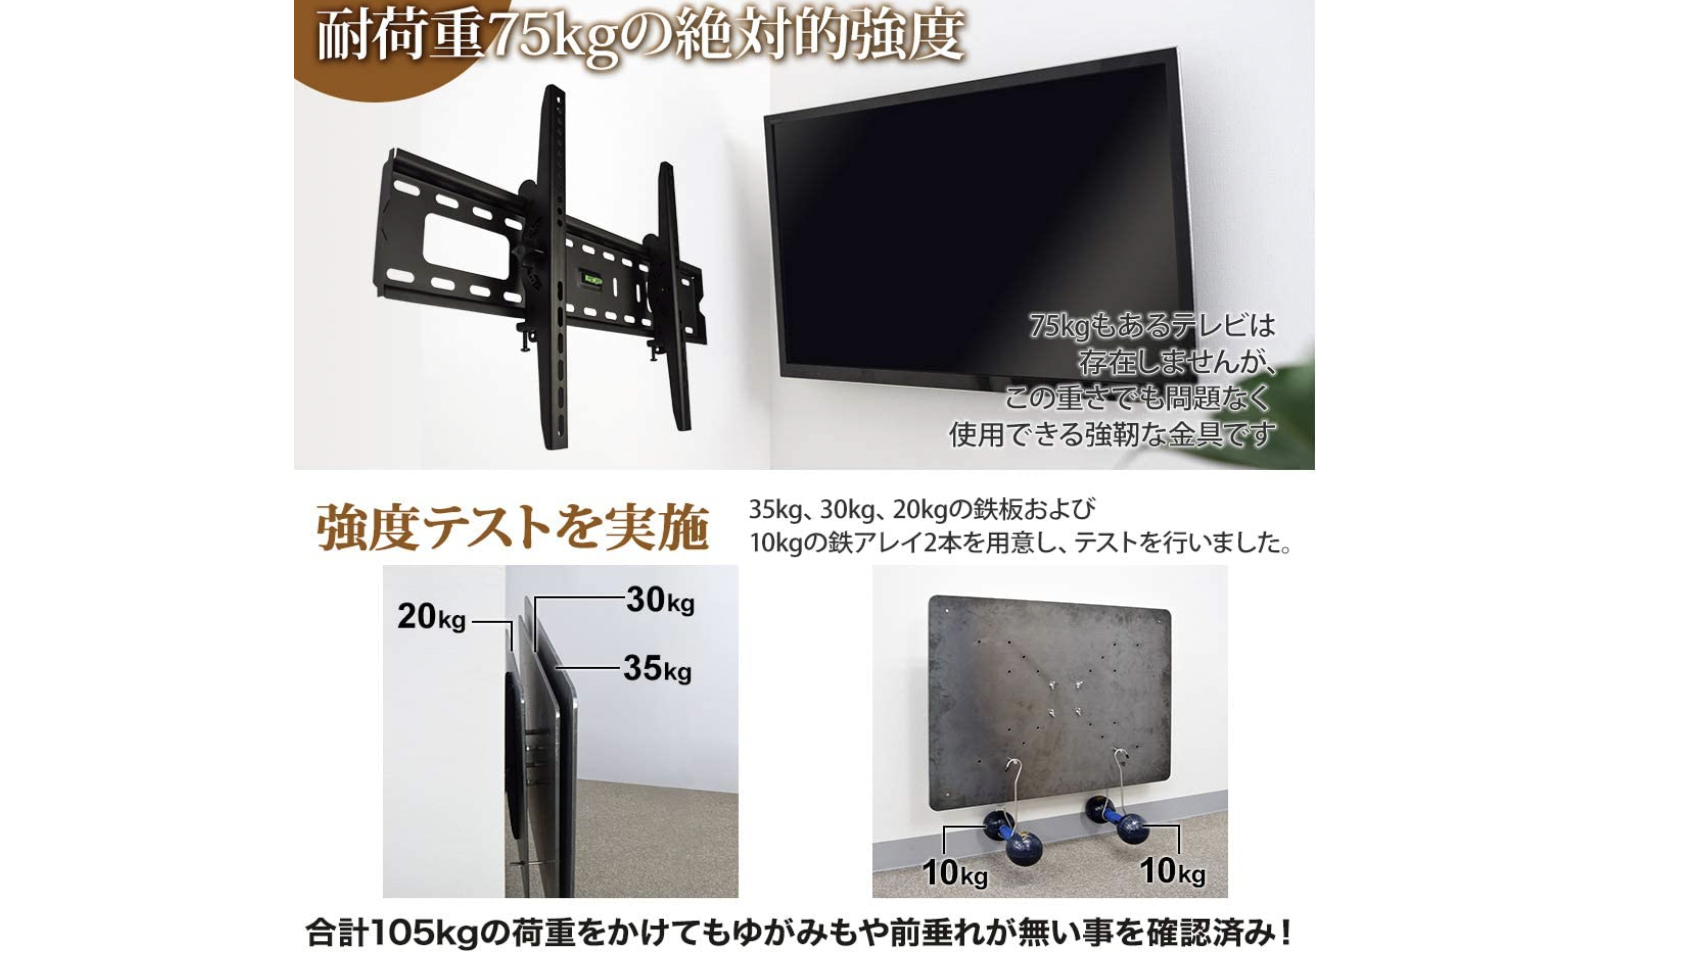 新発売の UNHO テレビ壁掛け金具 アーム式 TV壁かけ ダブルアーム 伸縮式 32〜65型対応 コーナーにも設置可能 上下 左右 前後 角度調節可能 